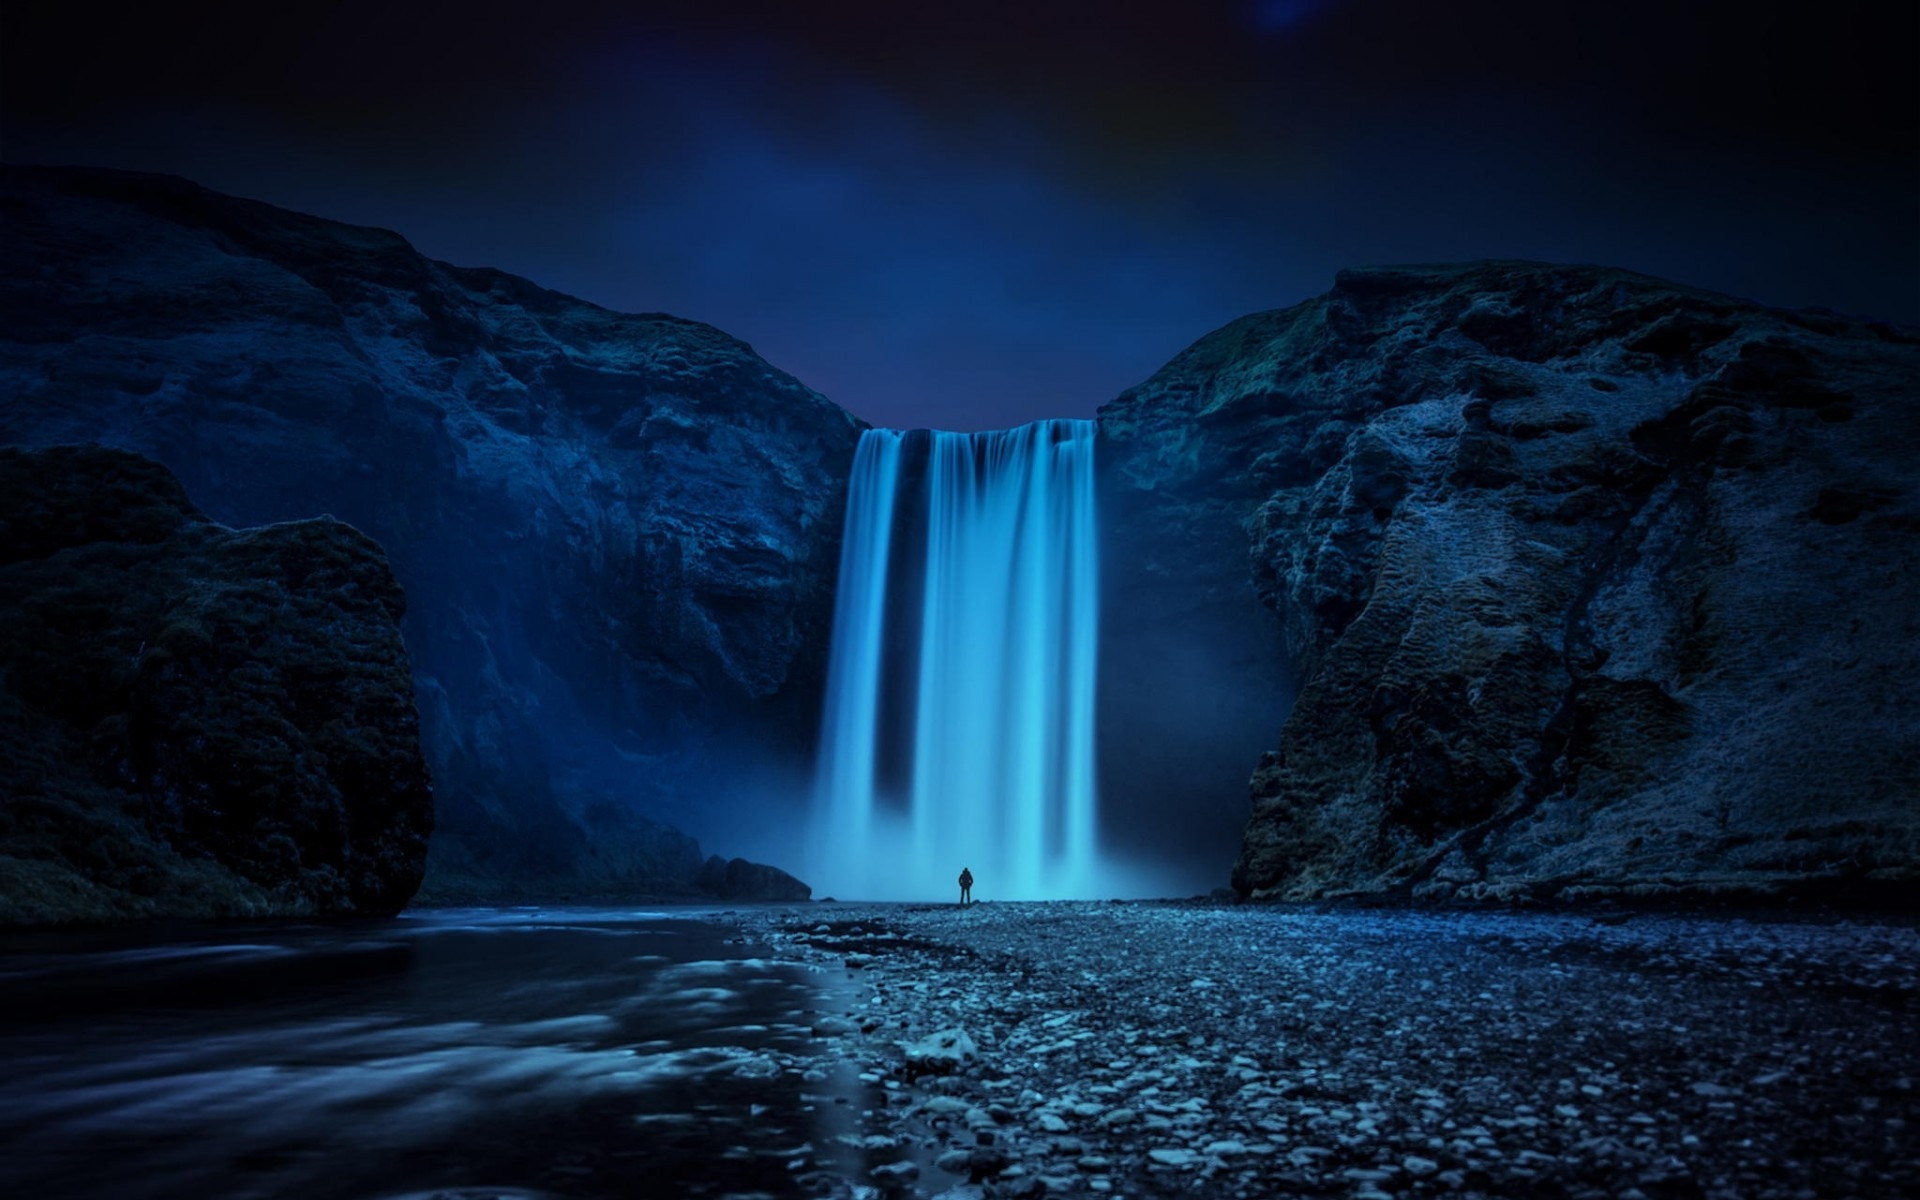 Beautiful Skogafoss Waterfall for 1920 x 1200 widescreen resolution